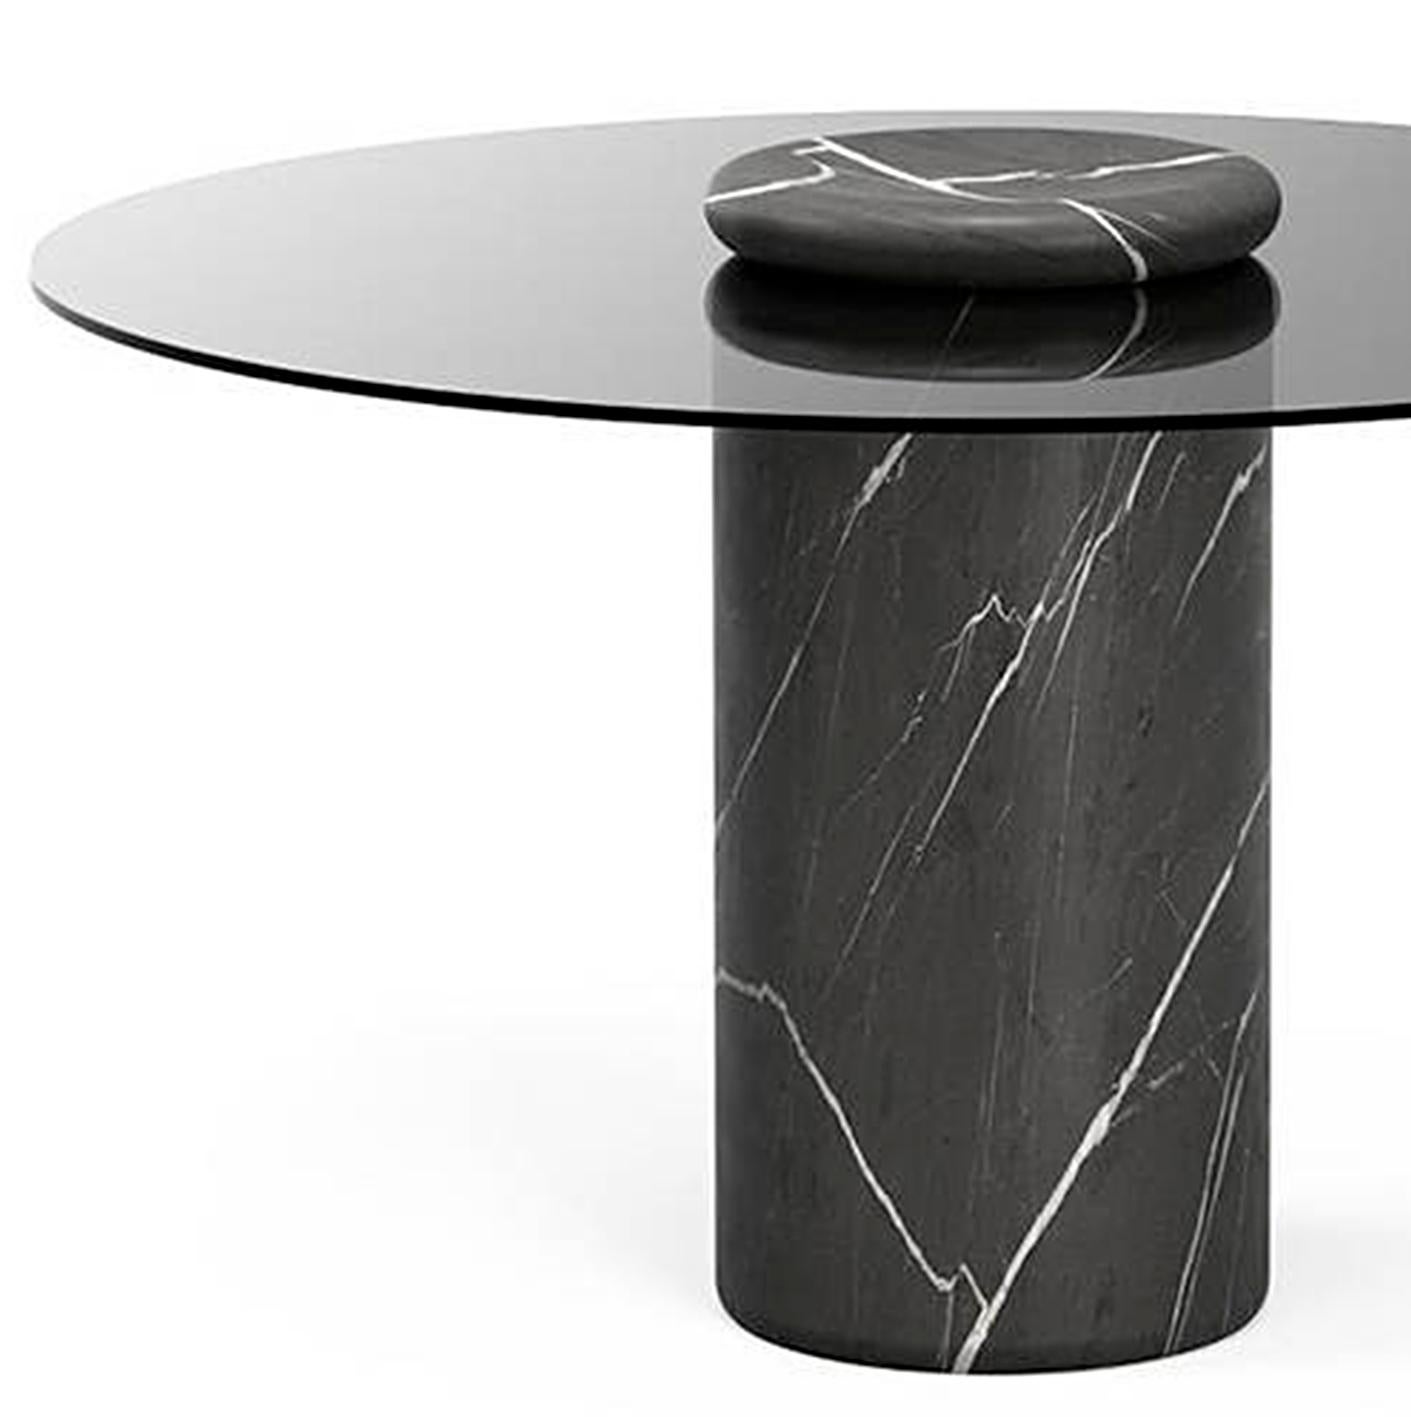 Table conçue par Angelo Mangiarotti.

Castore est une table en verre et en marbre de l'architecte, sculpteur et designer italien Angelo Mangiarotti. Conçu en 1975 pour Sorgente dei Mobili, ce design distinct est maintenant présenté par Karakter,